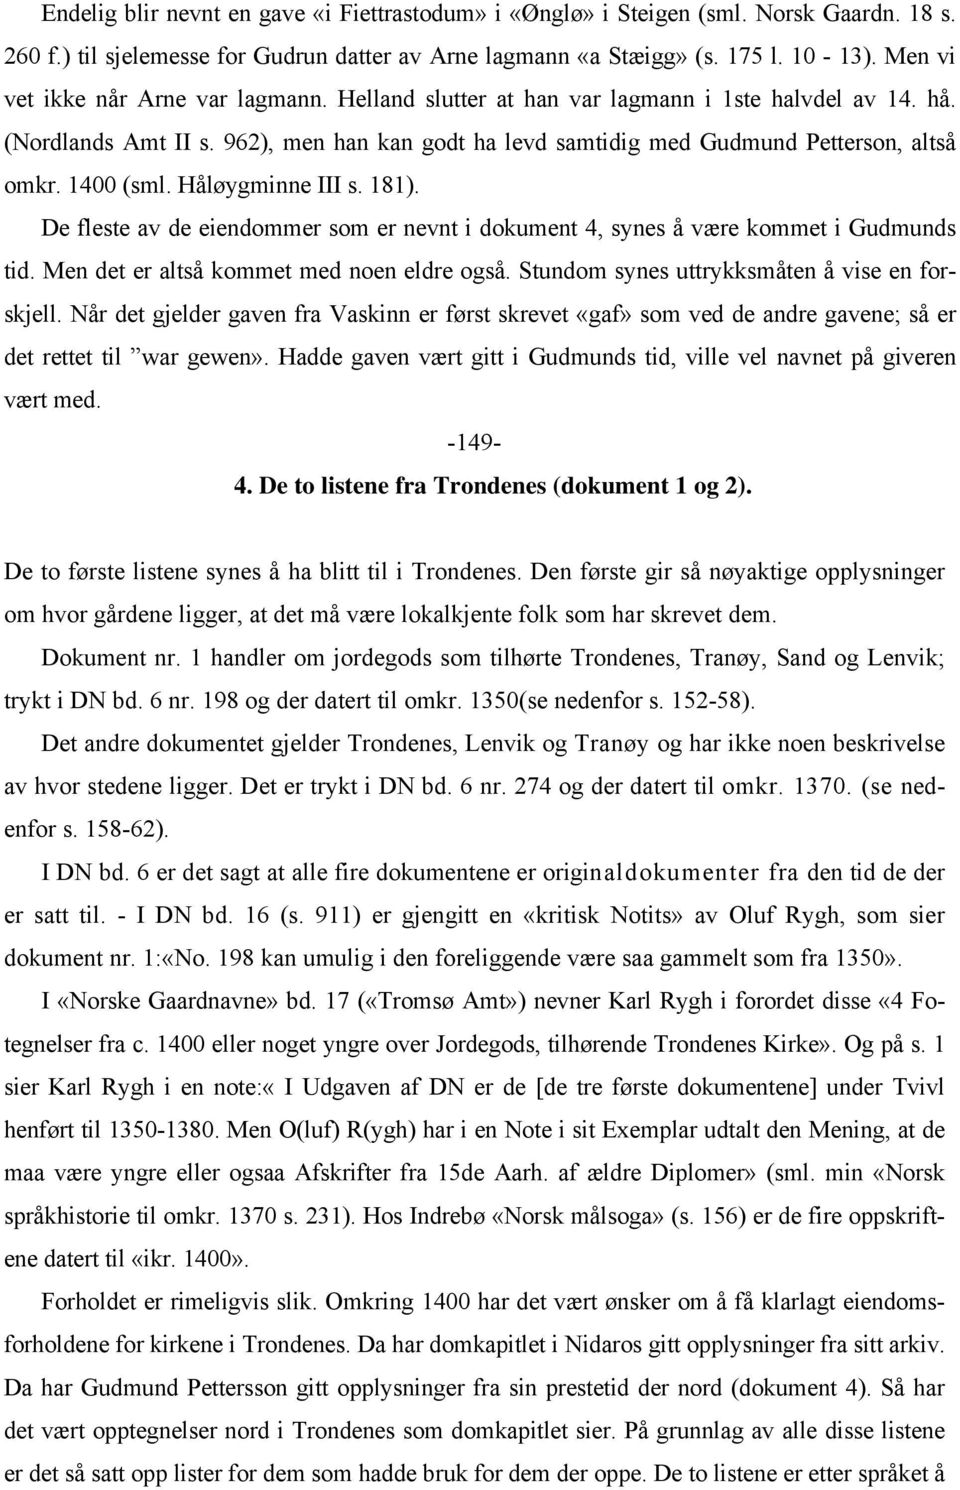 1400 (sml. Håløygminne III s. 181). De fleste av de eiendommer som er nevnt i dokument 4, synes å være kommet i Gudmunds tid. Men det er altså kommet med noen eldre også.